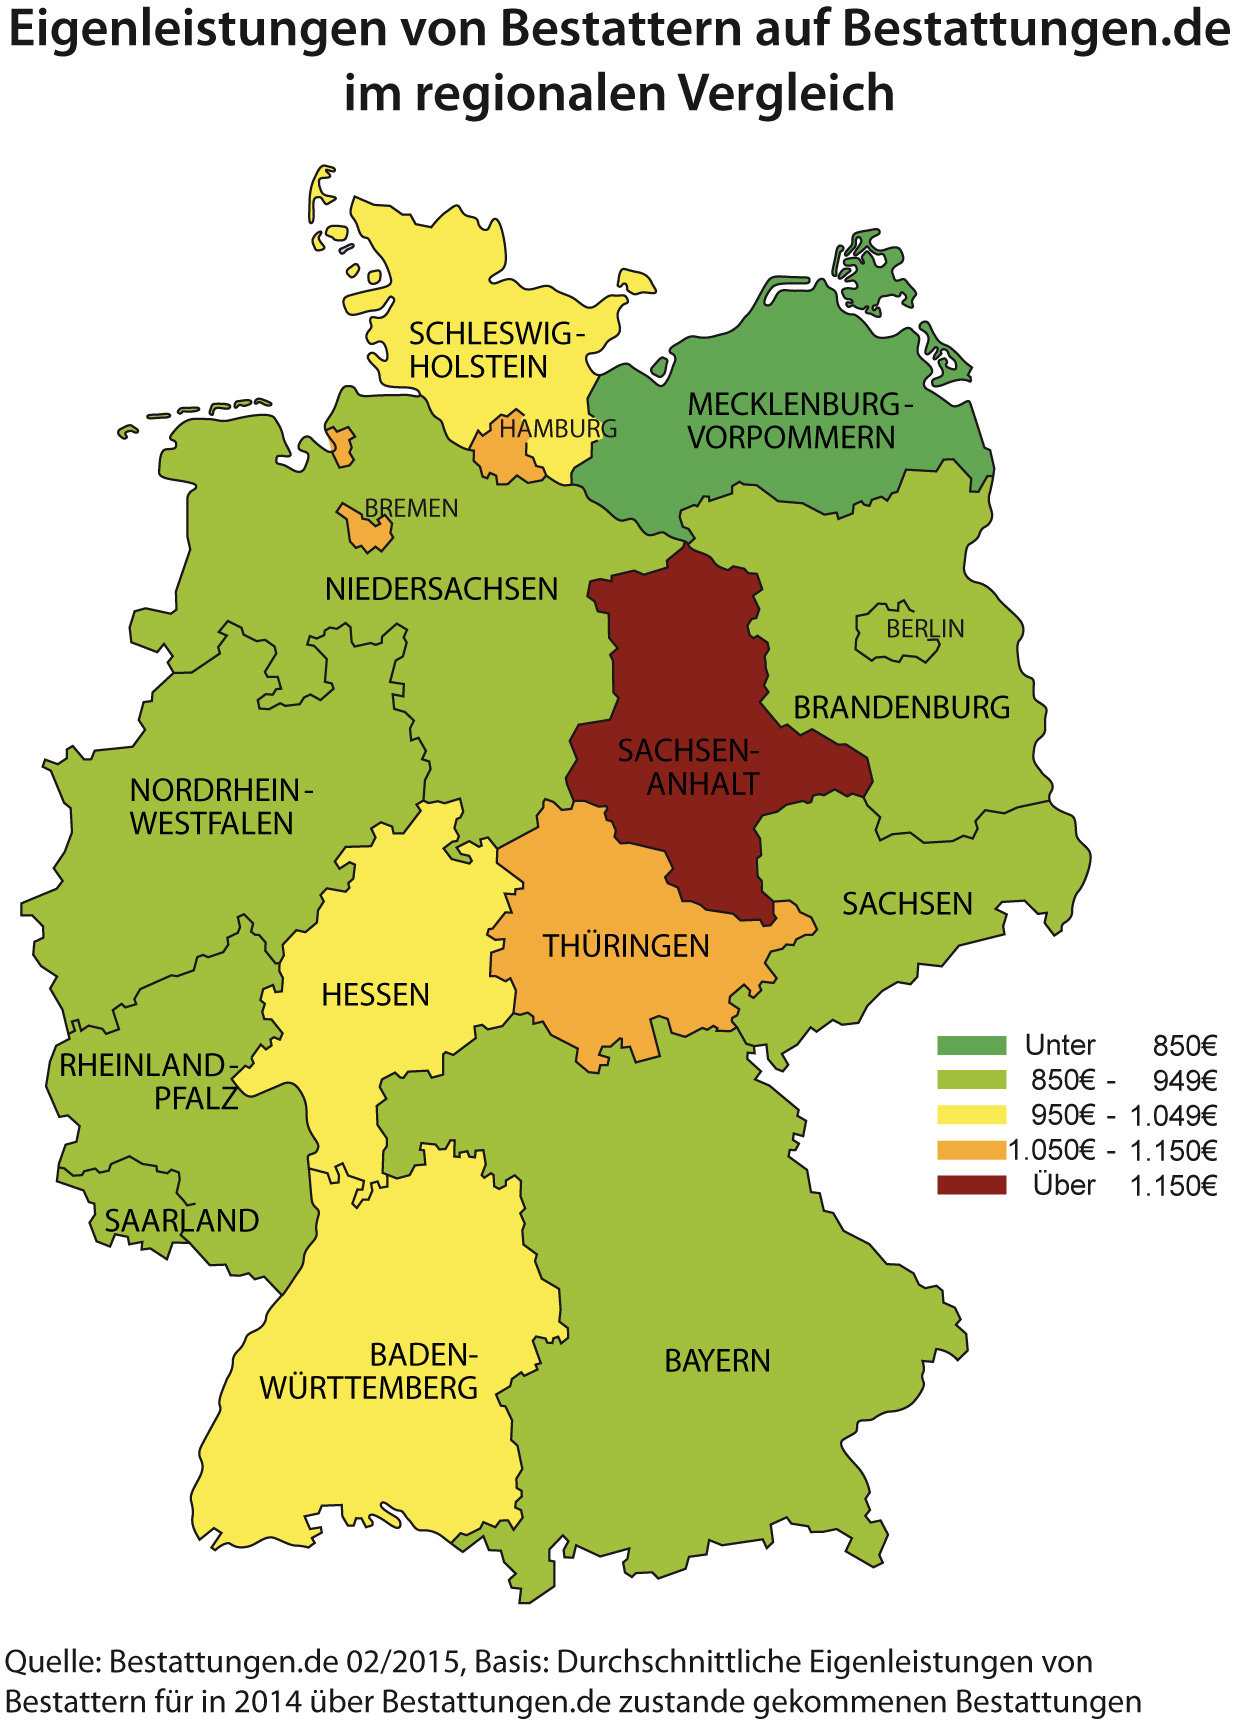 Eigenleistungen von Bestattern auf Bestattungen.de im regionalen Vergleich 2014